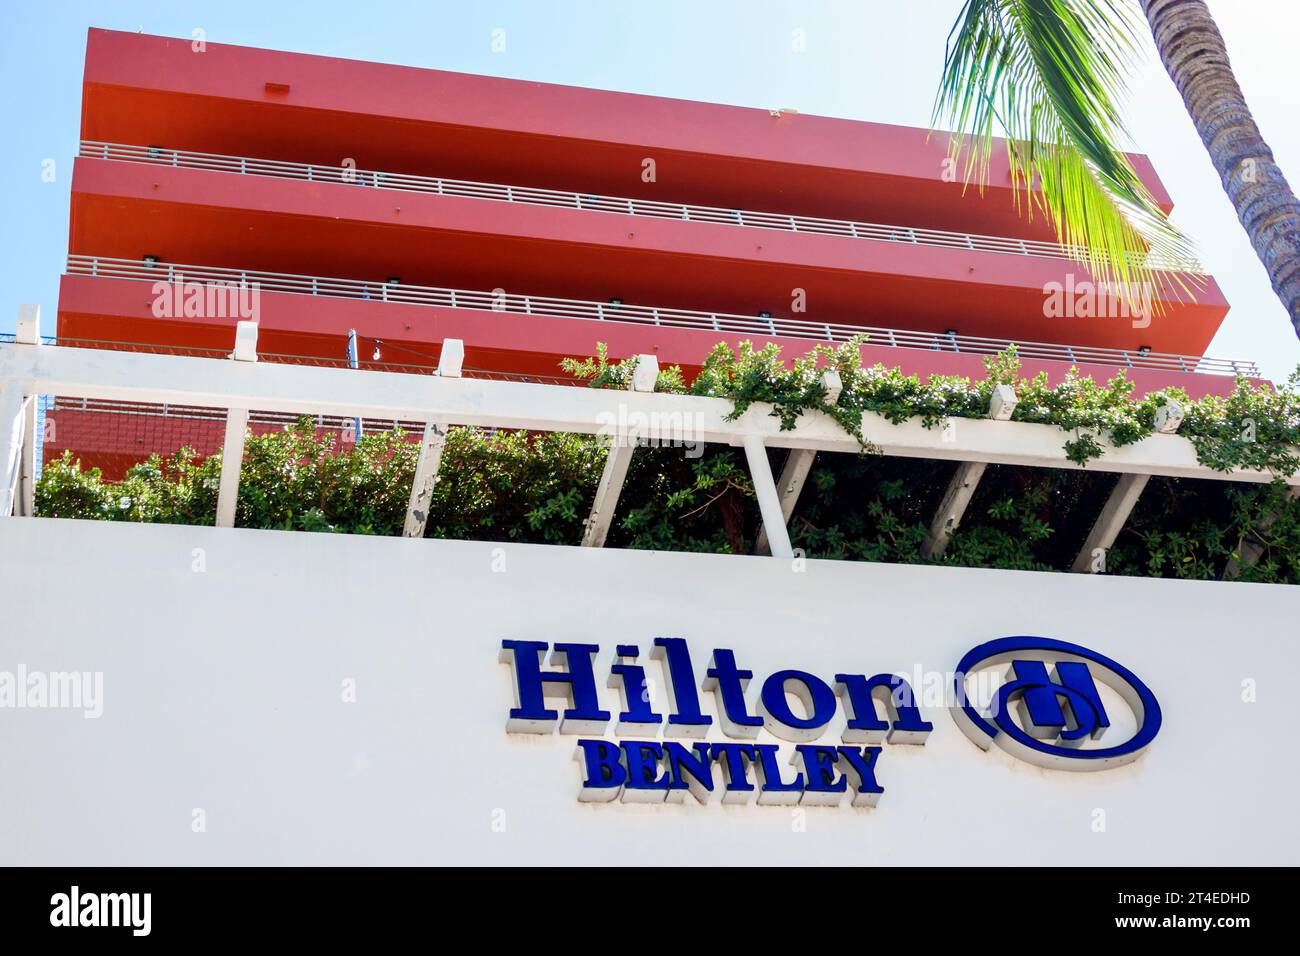 Miami Beach Floride, extérieur, entrée principale de l'hôtel, Ocean Drive, Hilton Bentley Miami/South Beach enseigne, hôtels motels entreprises Banque D'Images